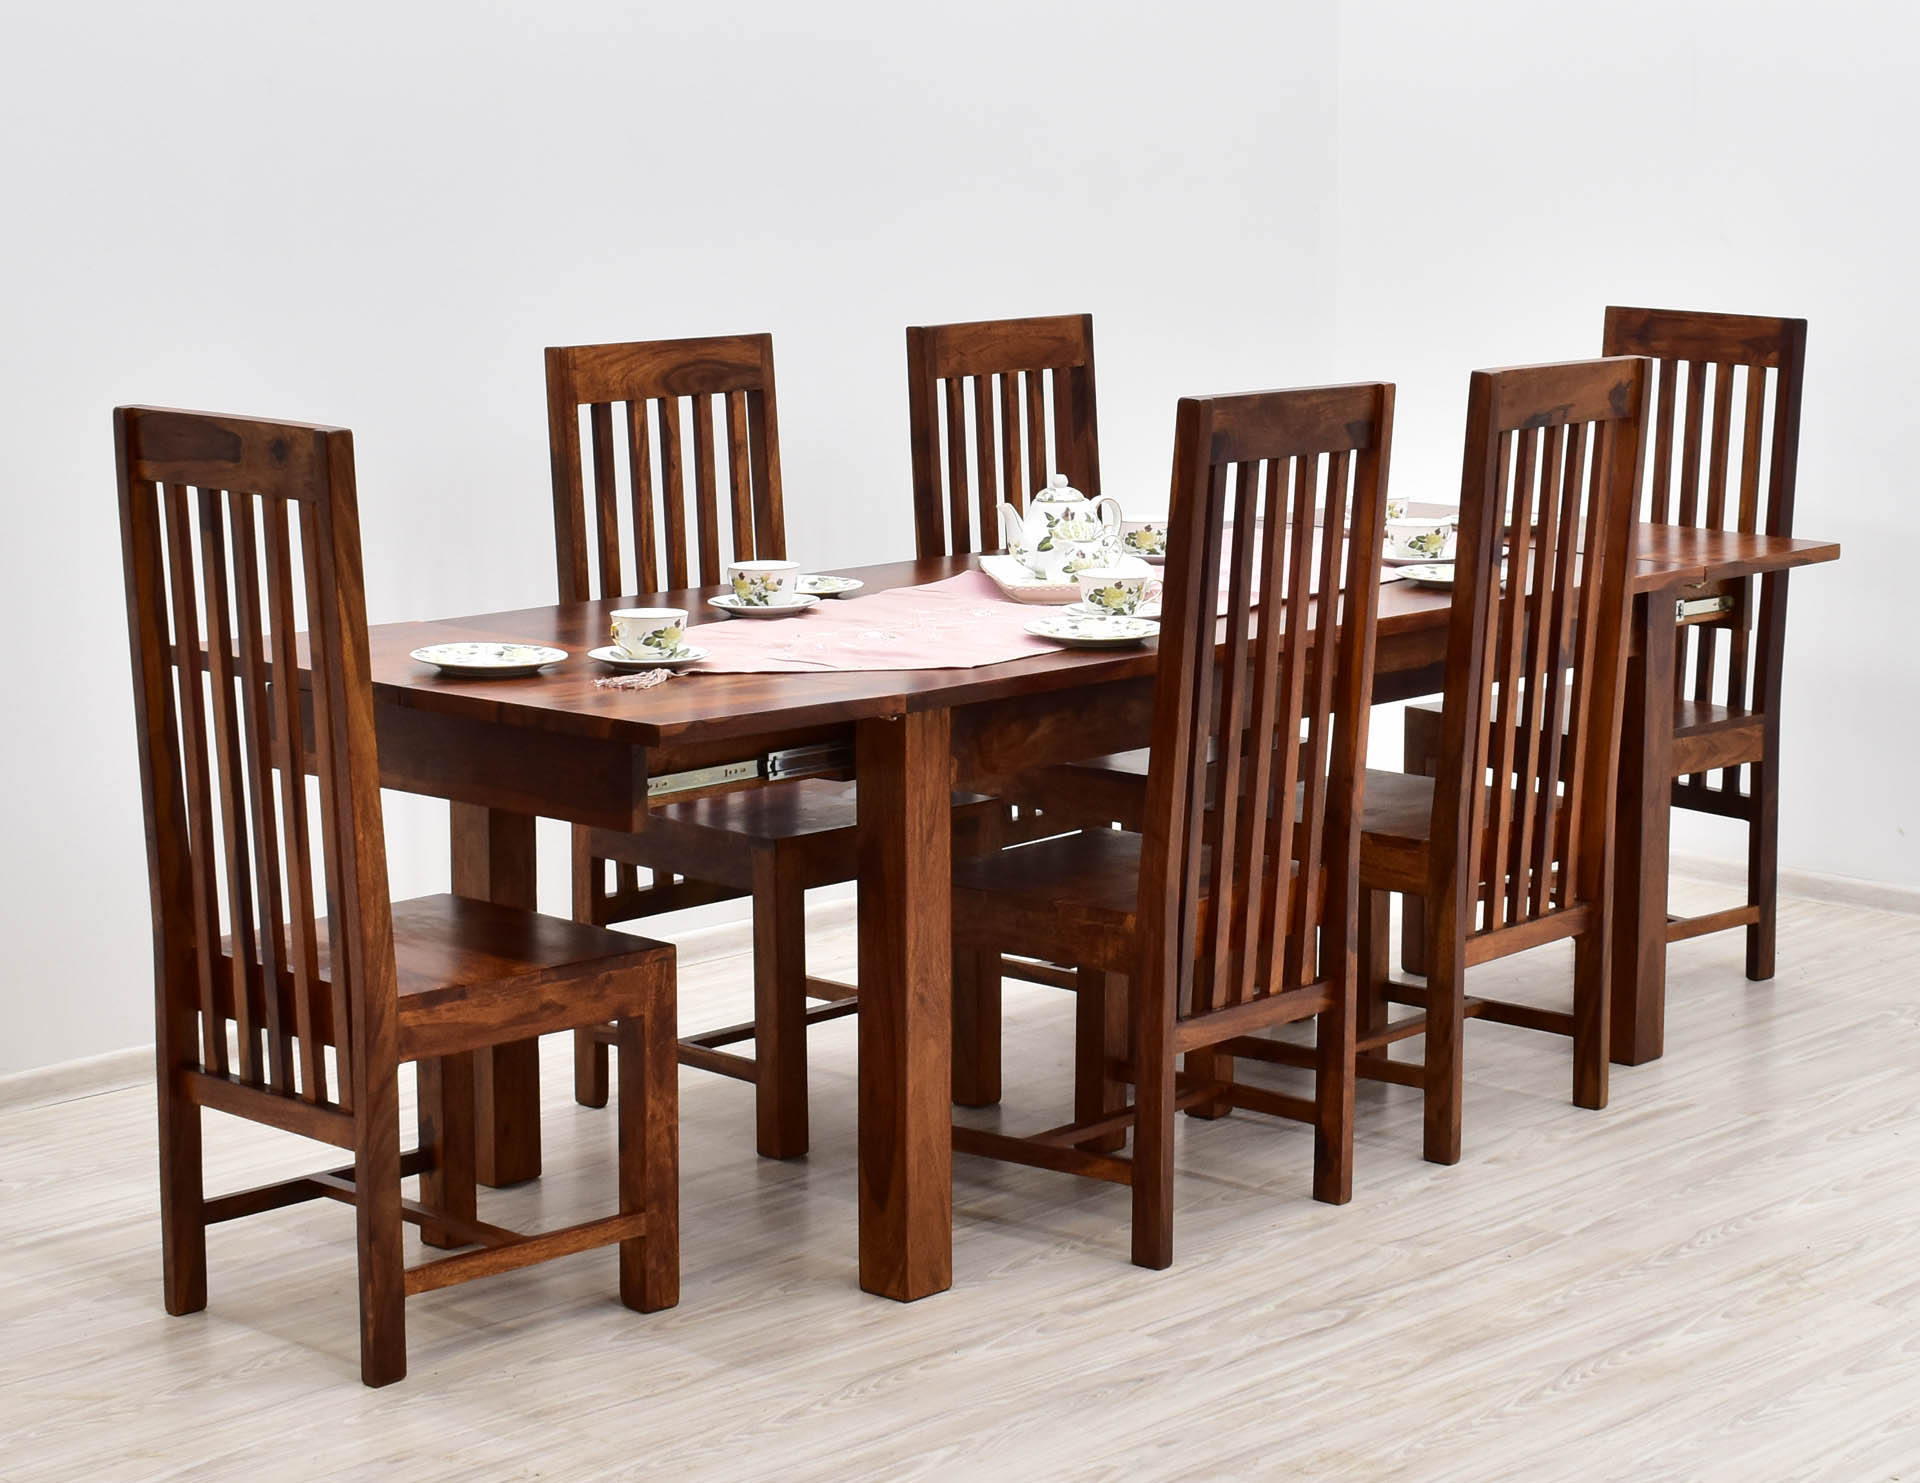 komplet-obiadowy-indyjski-stol-rozkladany-6-krzesel-lite-drewno-palisander-miodowy-odcien-brazu